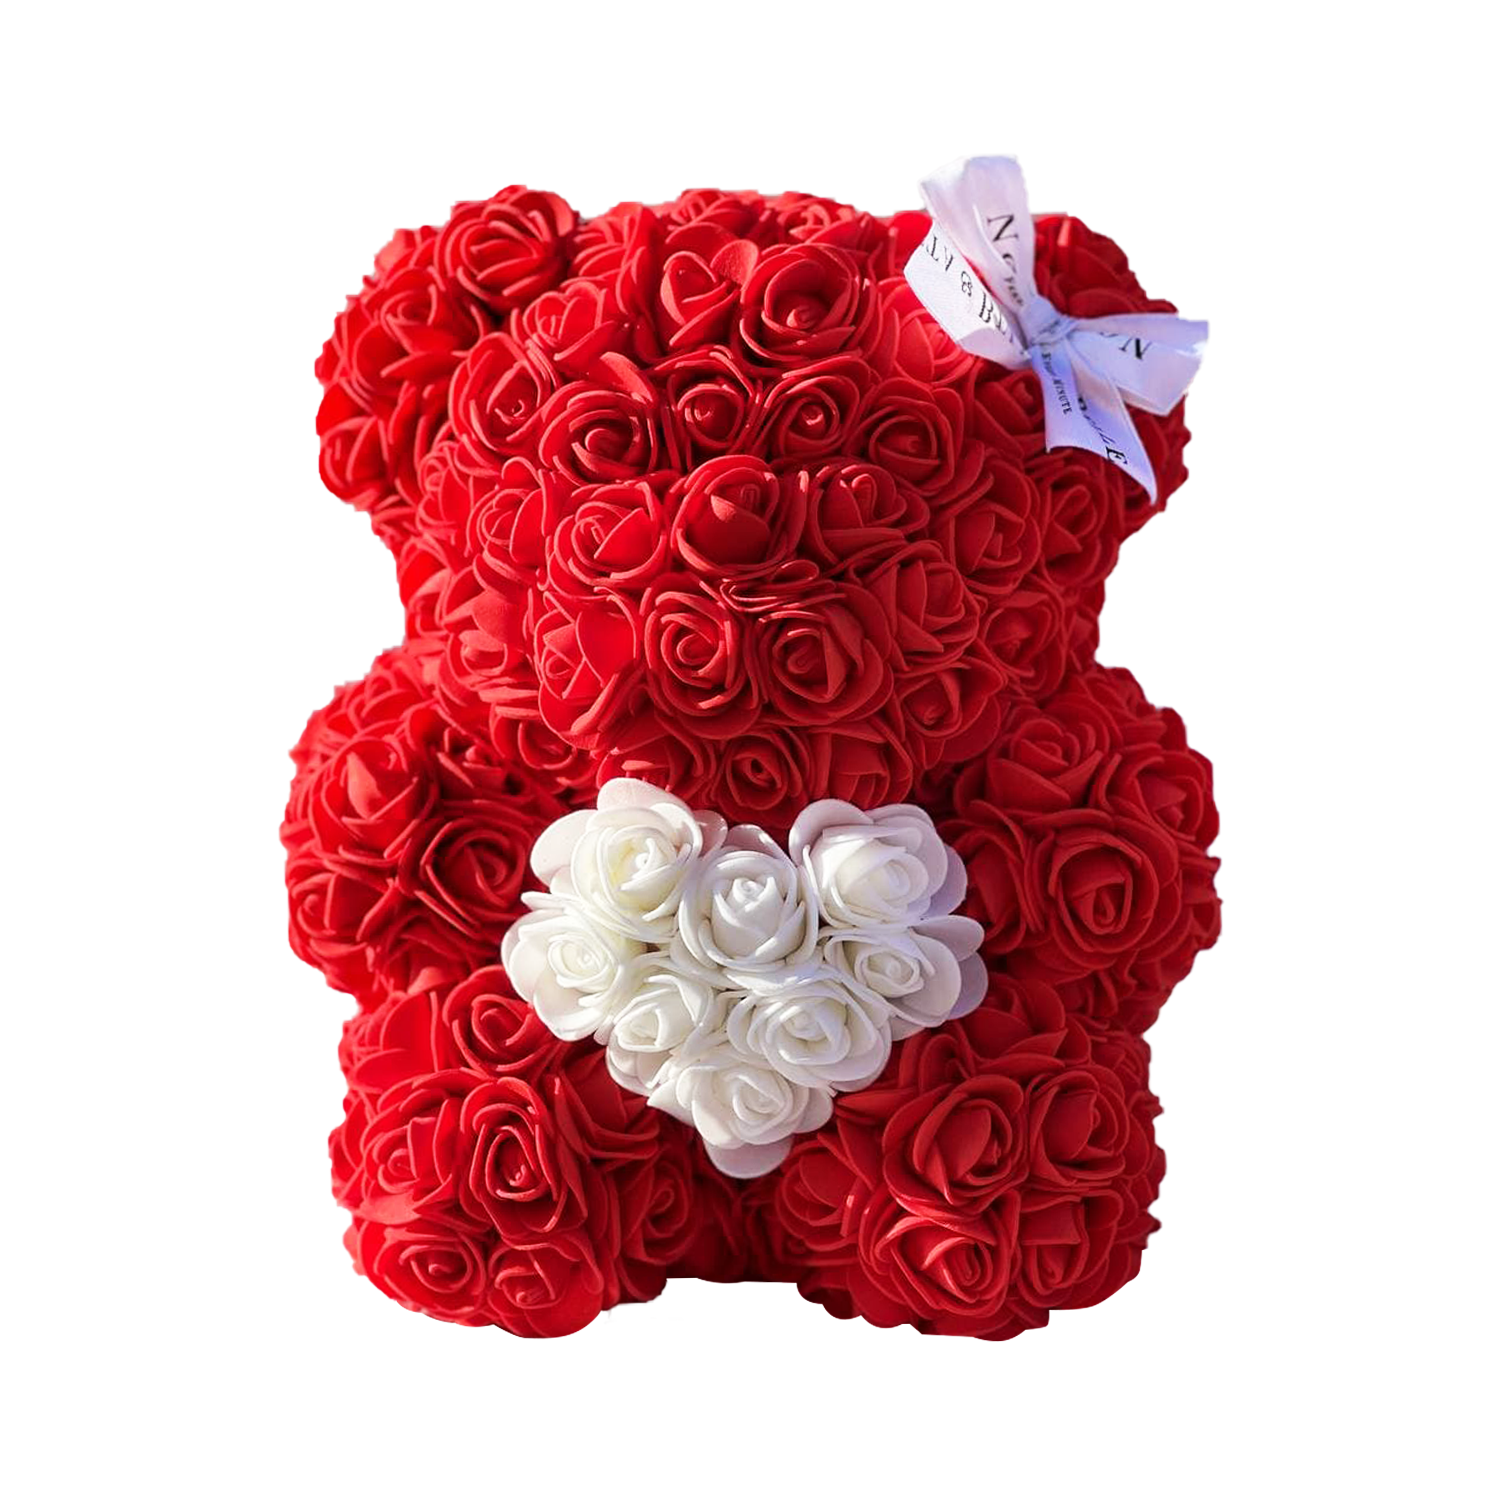 Oso de rosas rojas con un corazón blanco – 25cm